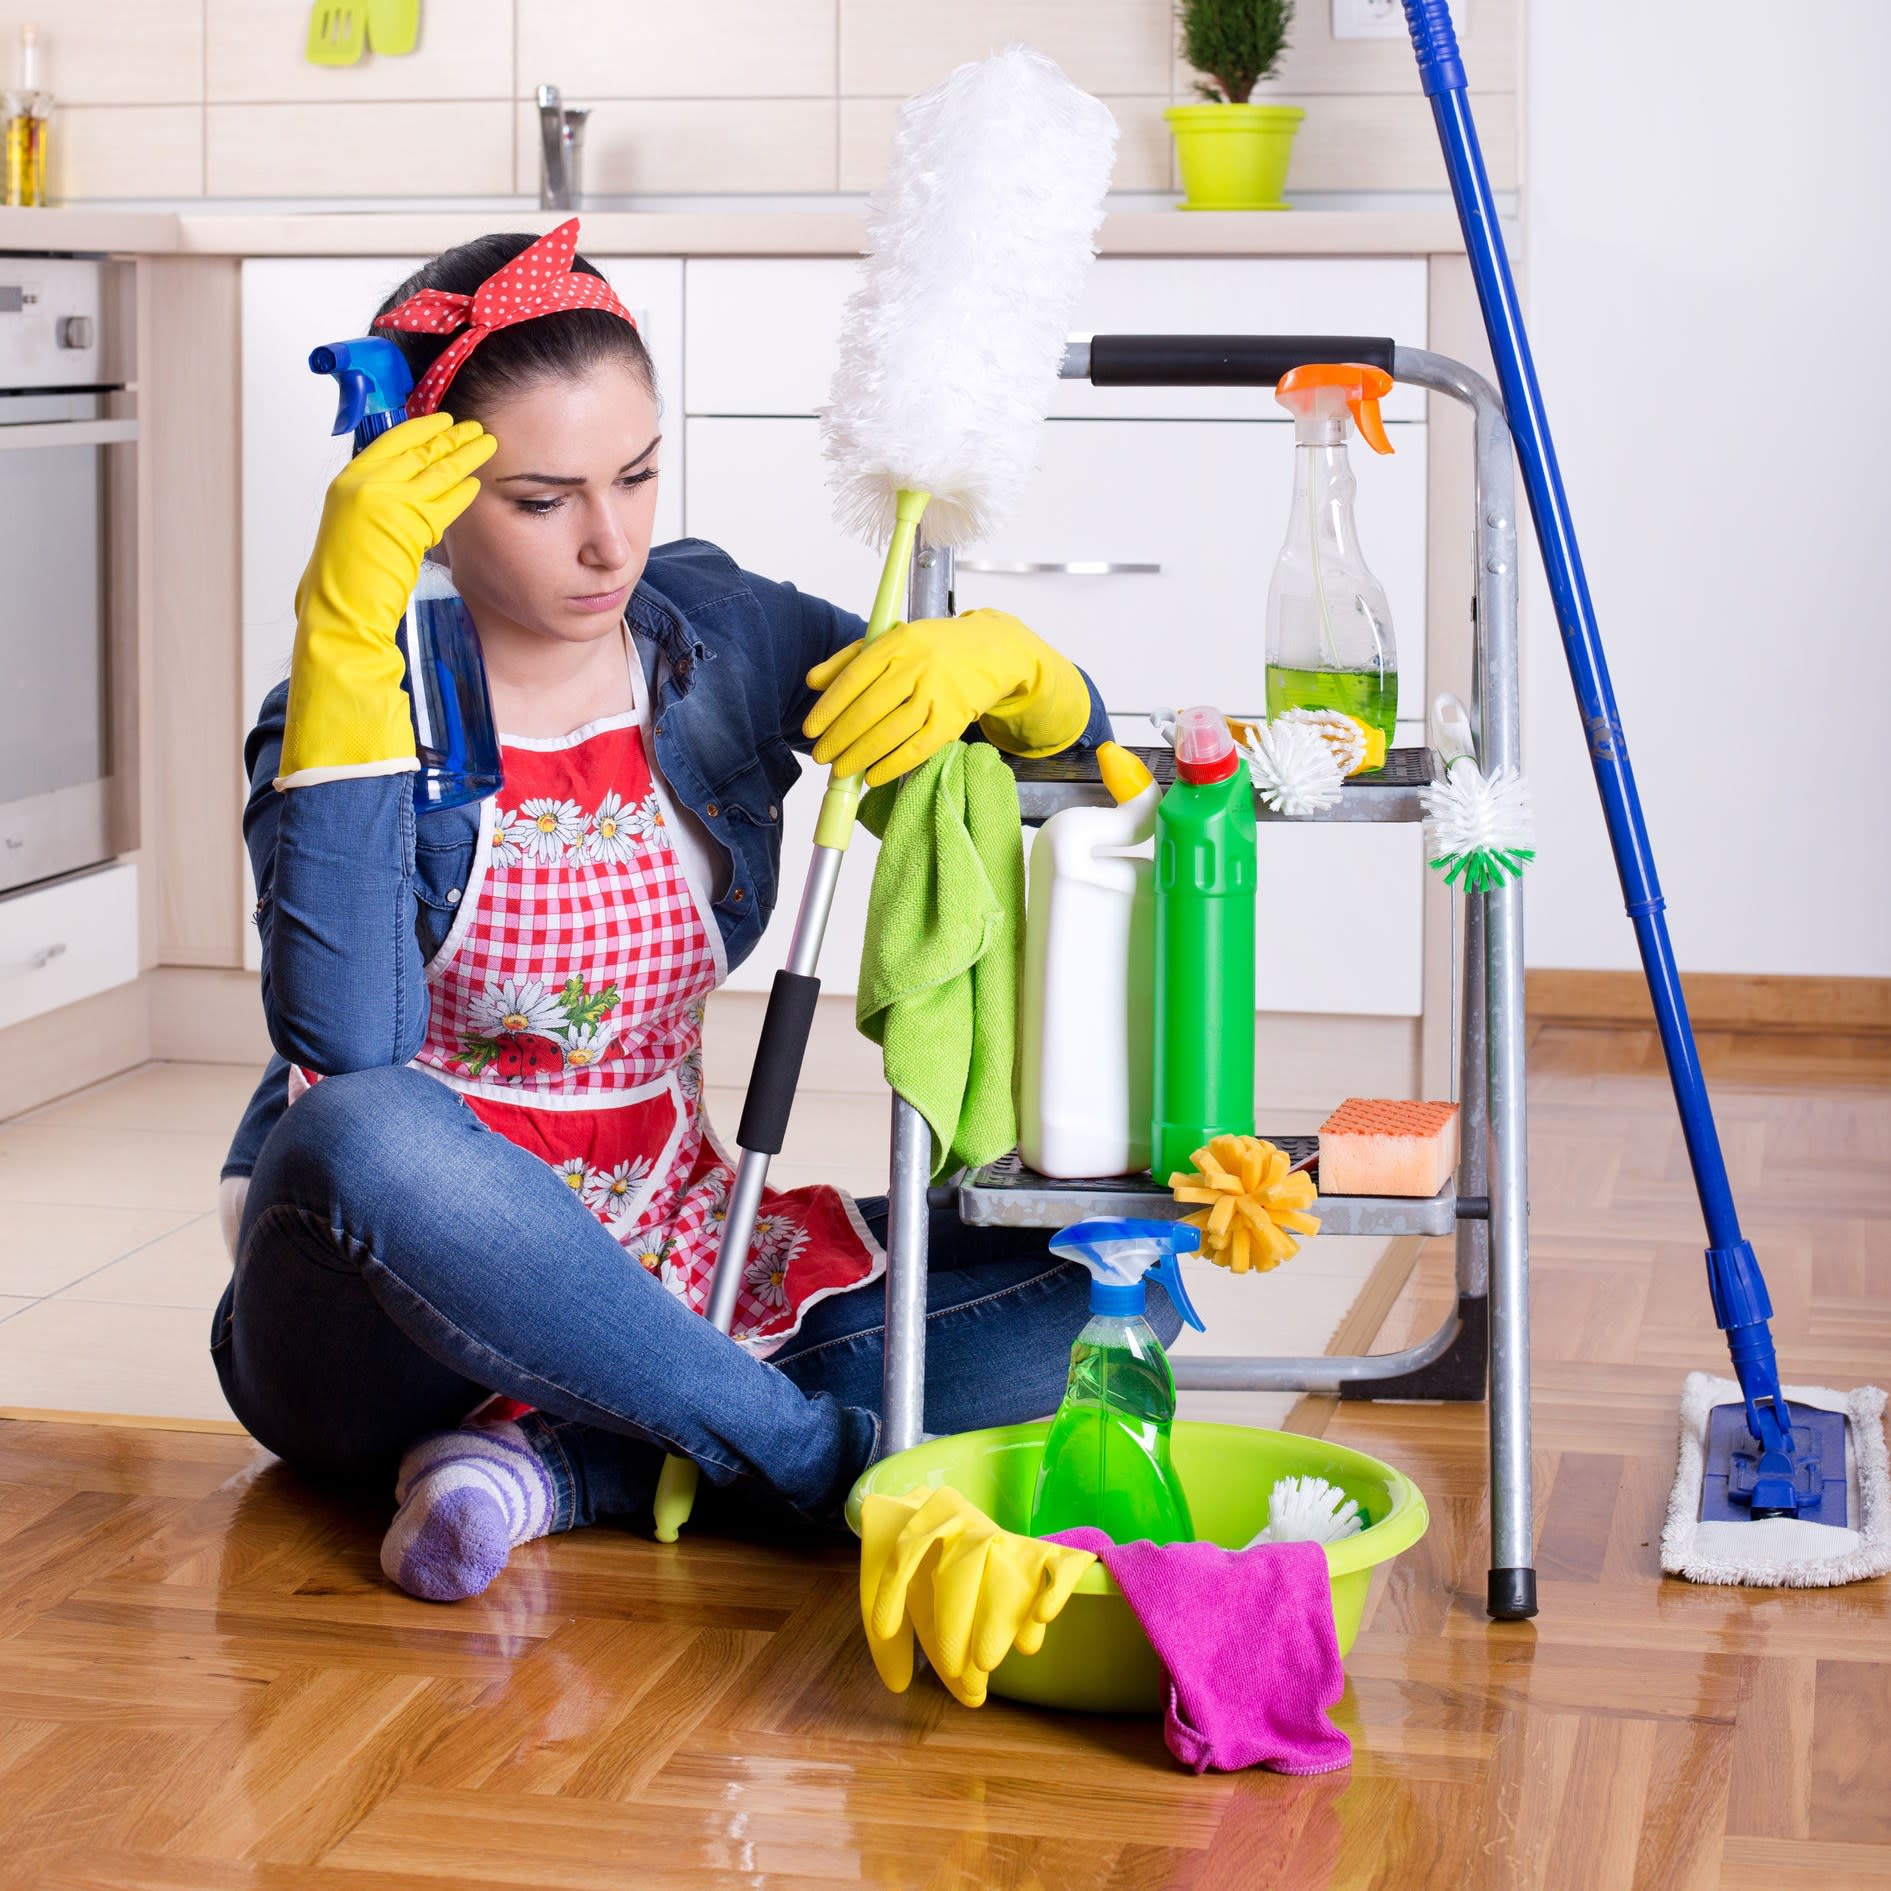 Как проводить дома уборку самостоятельно: с чего начать, какие моющие средства используются, особенности и преимущества